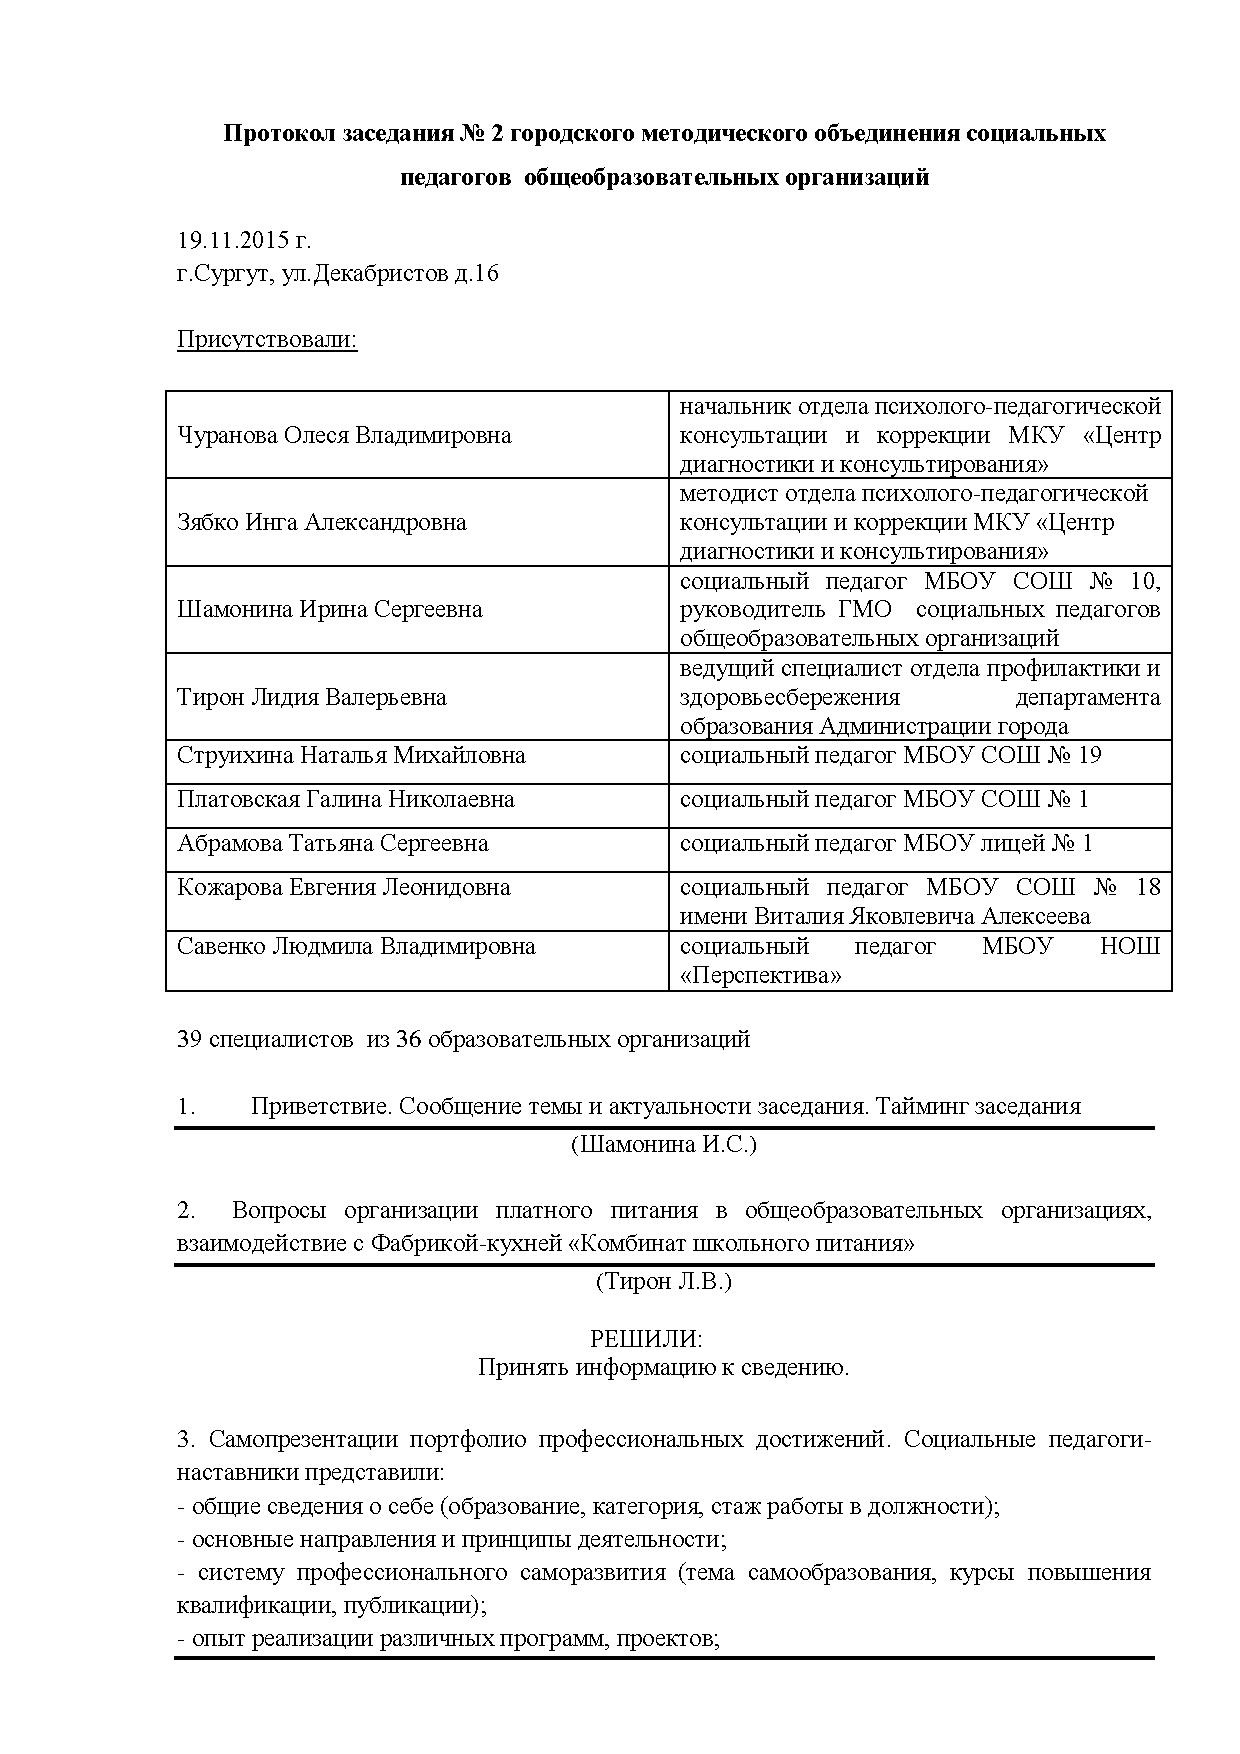 Протокол от 19.11.15.pdf